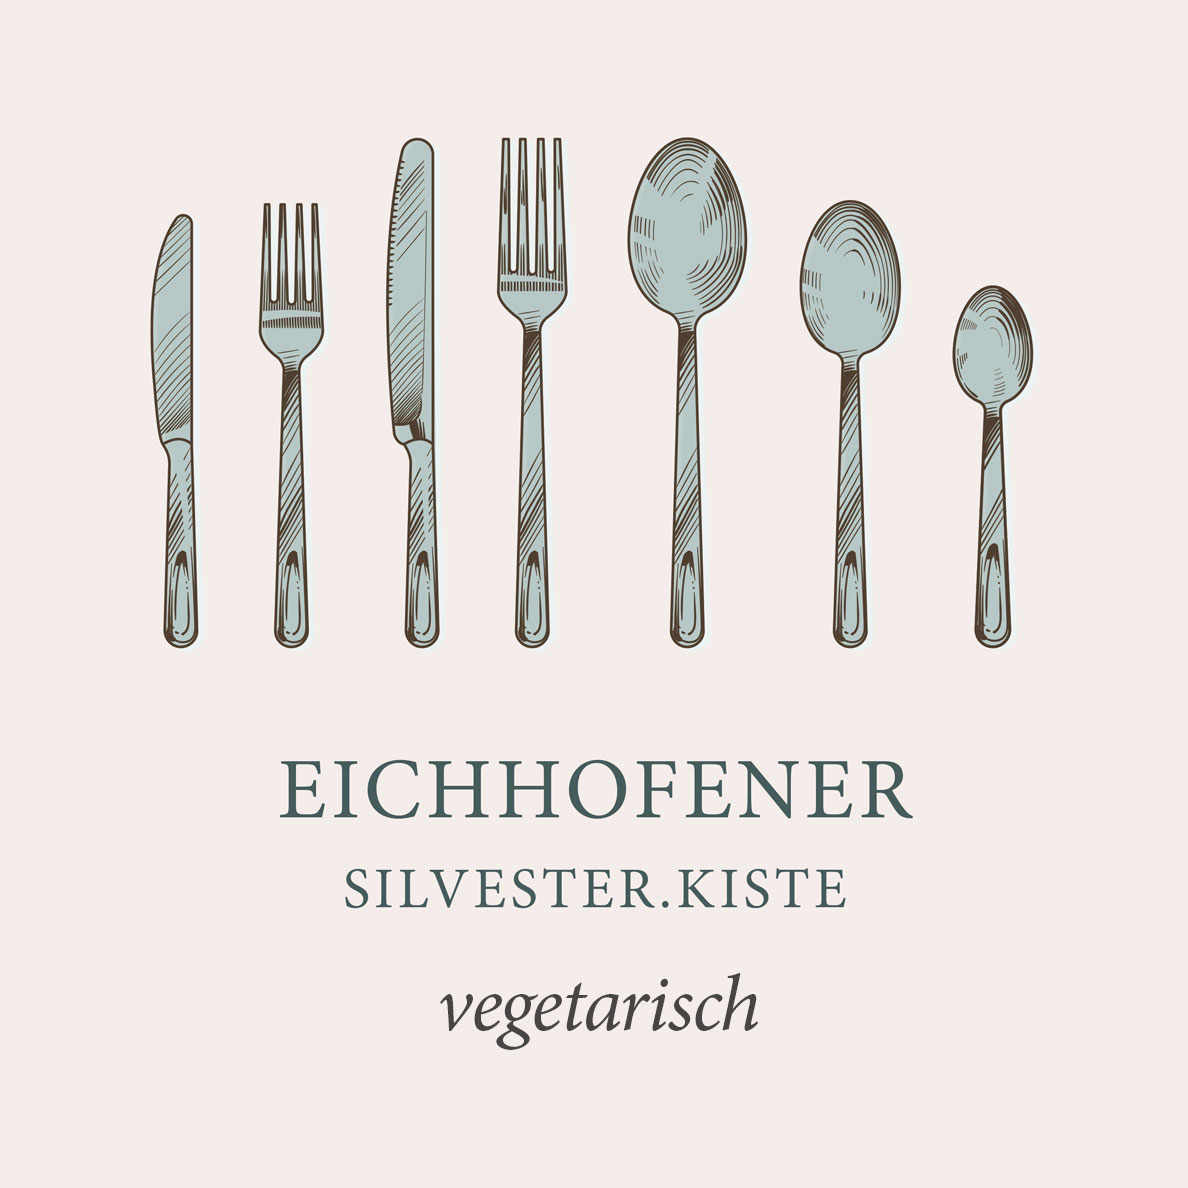 Eichhofener Silvester.Kiste Vegetarisch 